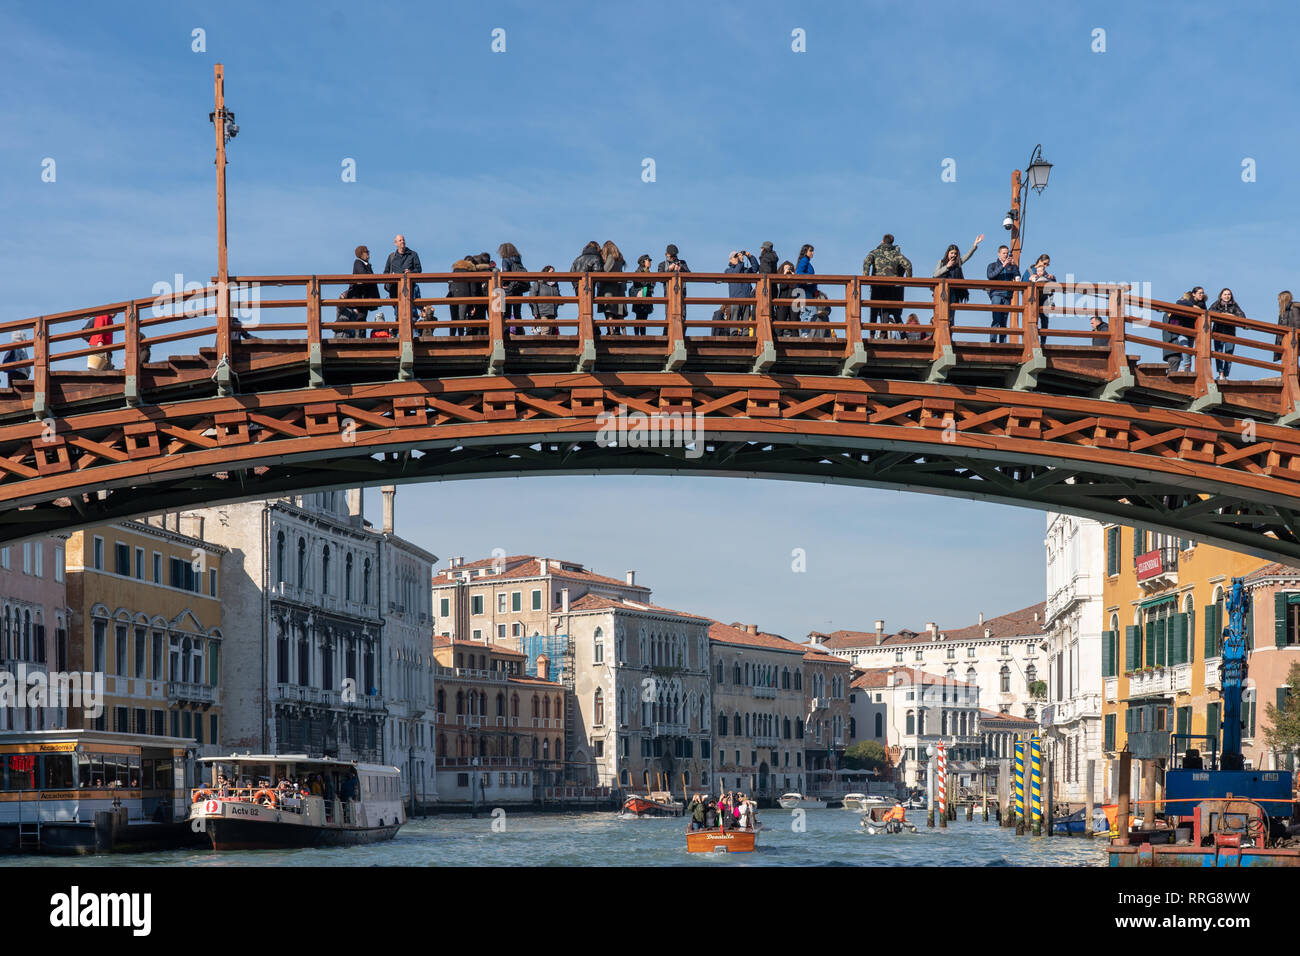 Vues générales de Venise. À partir d'une série de photos de voyage en Italie. Date de la photo : le mercredi 13 février, 2019. Photo : Roger Garfield/Alamy Banque D'Images